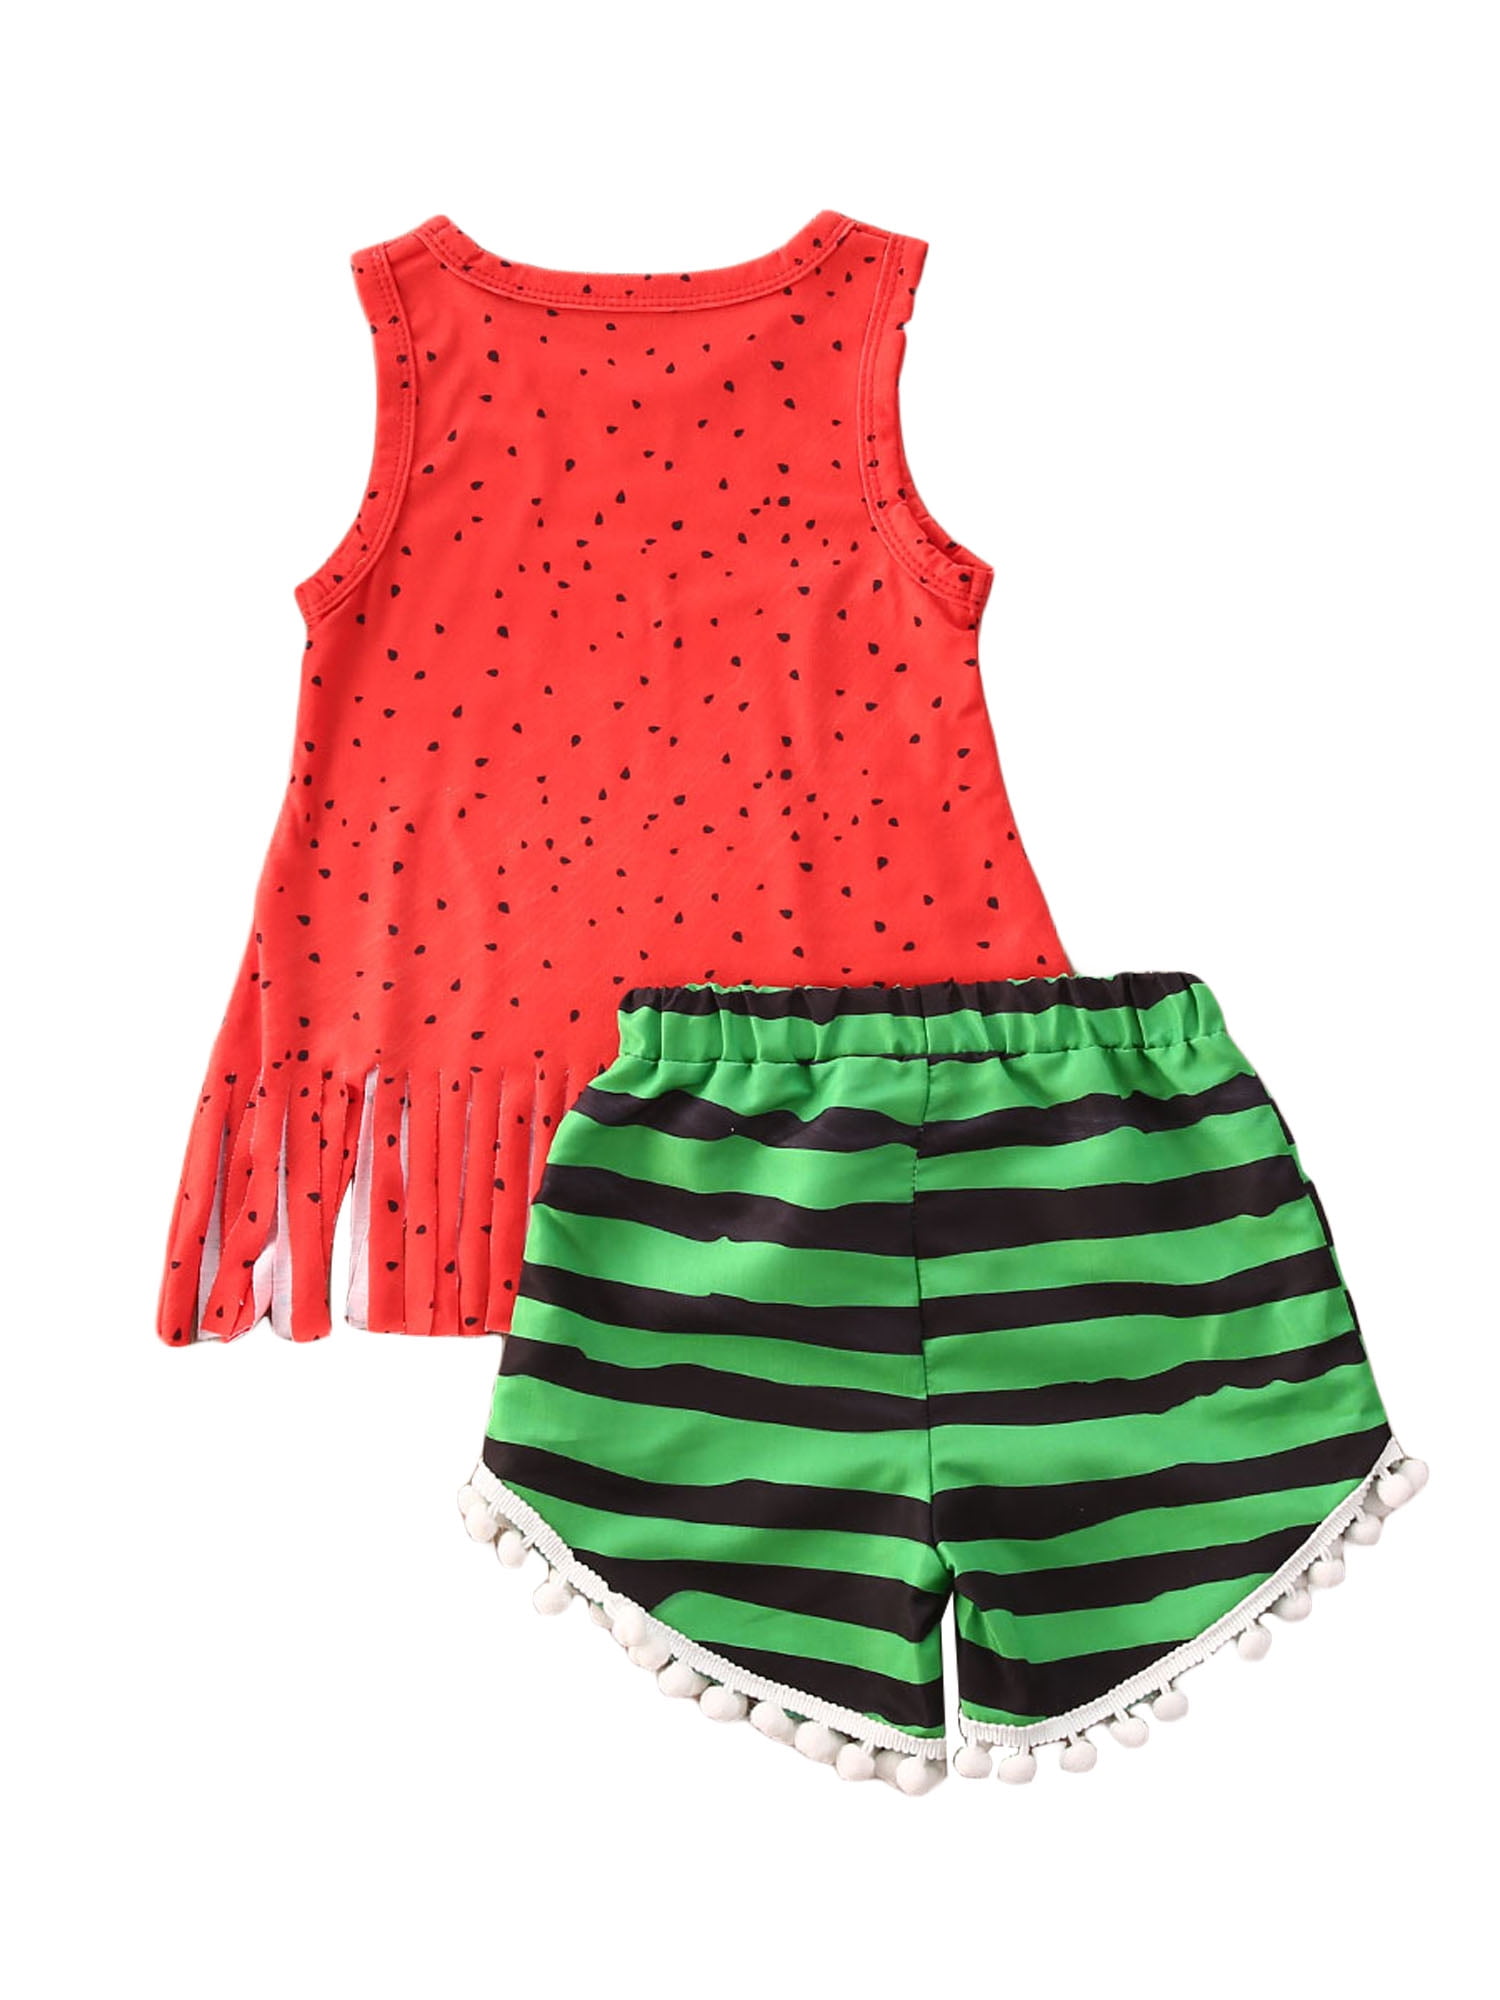 Watermelon Dresses+Bag Set Baby Girls Summer Tank Dress Sleeveless Cute Outfit 